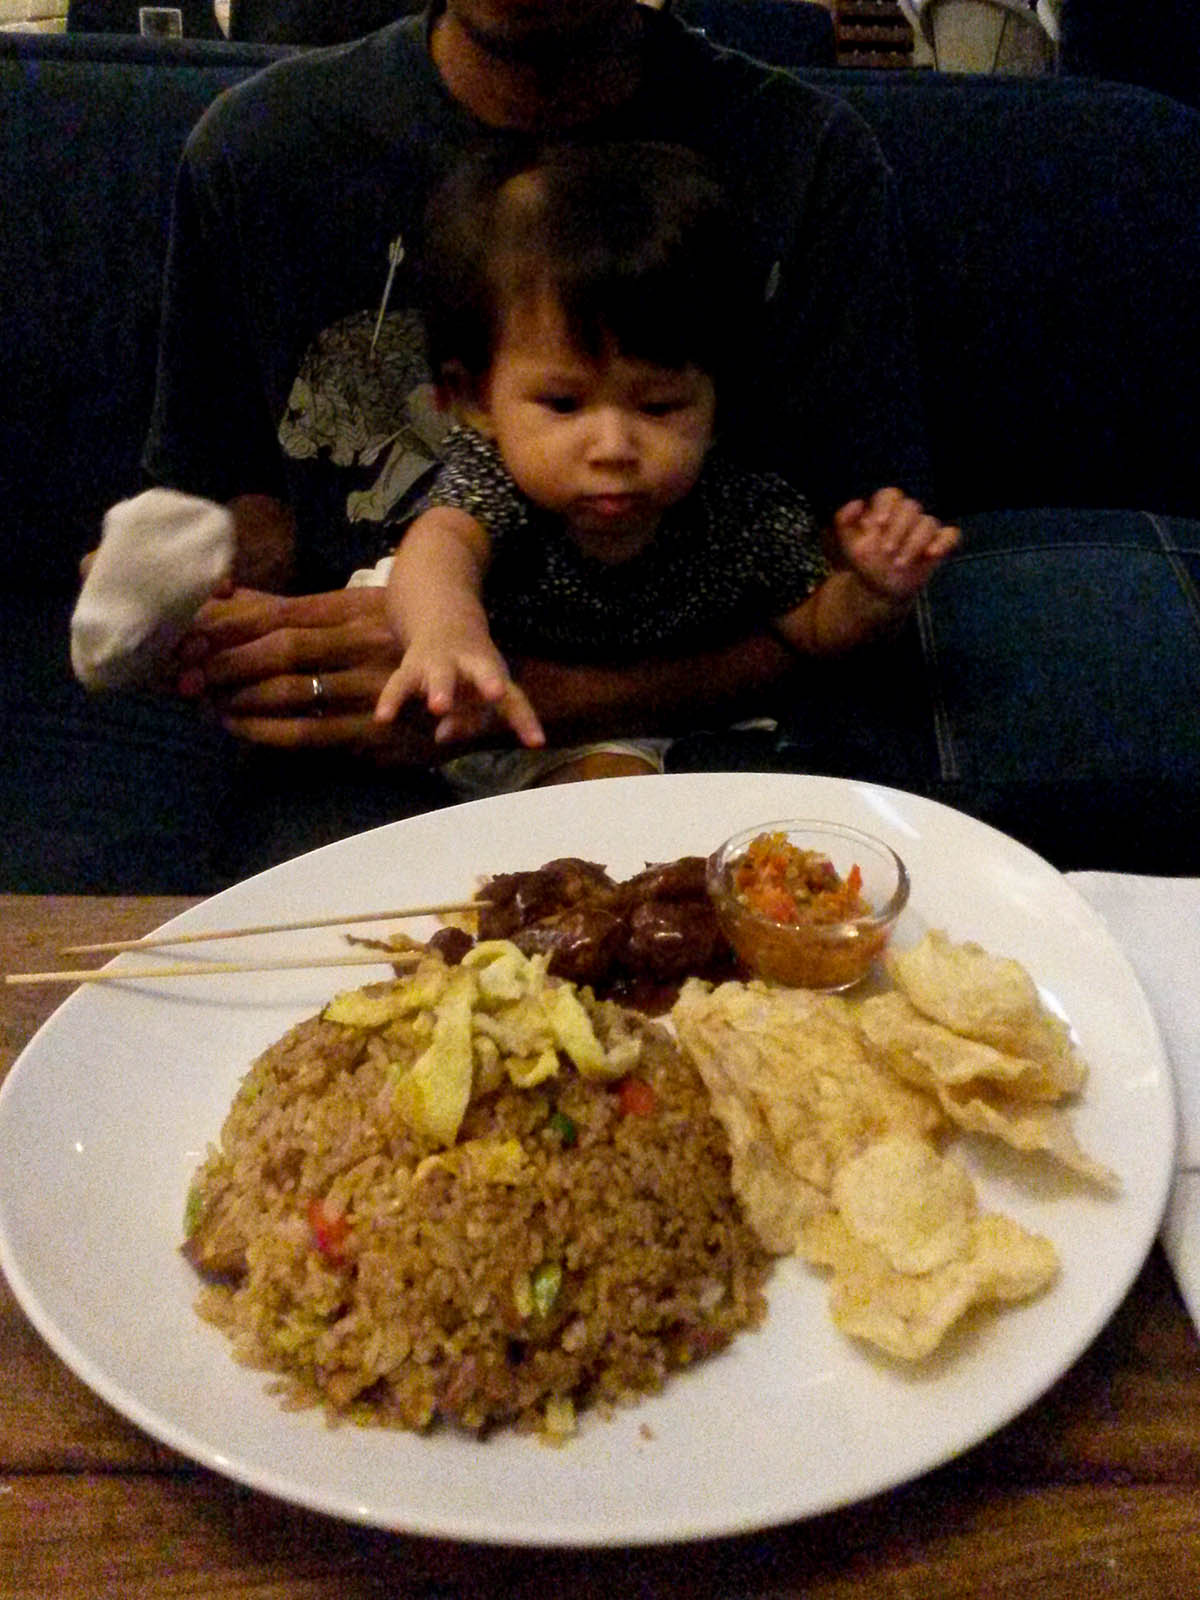 Jakarta ristoranti family friendly, il ristorante Koi Kemang con la piccola Lara.